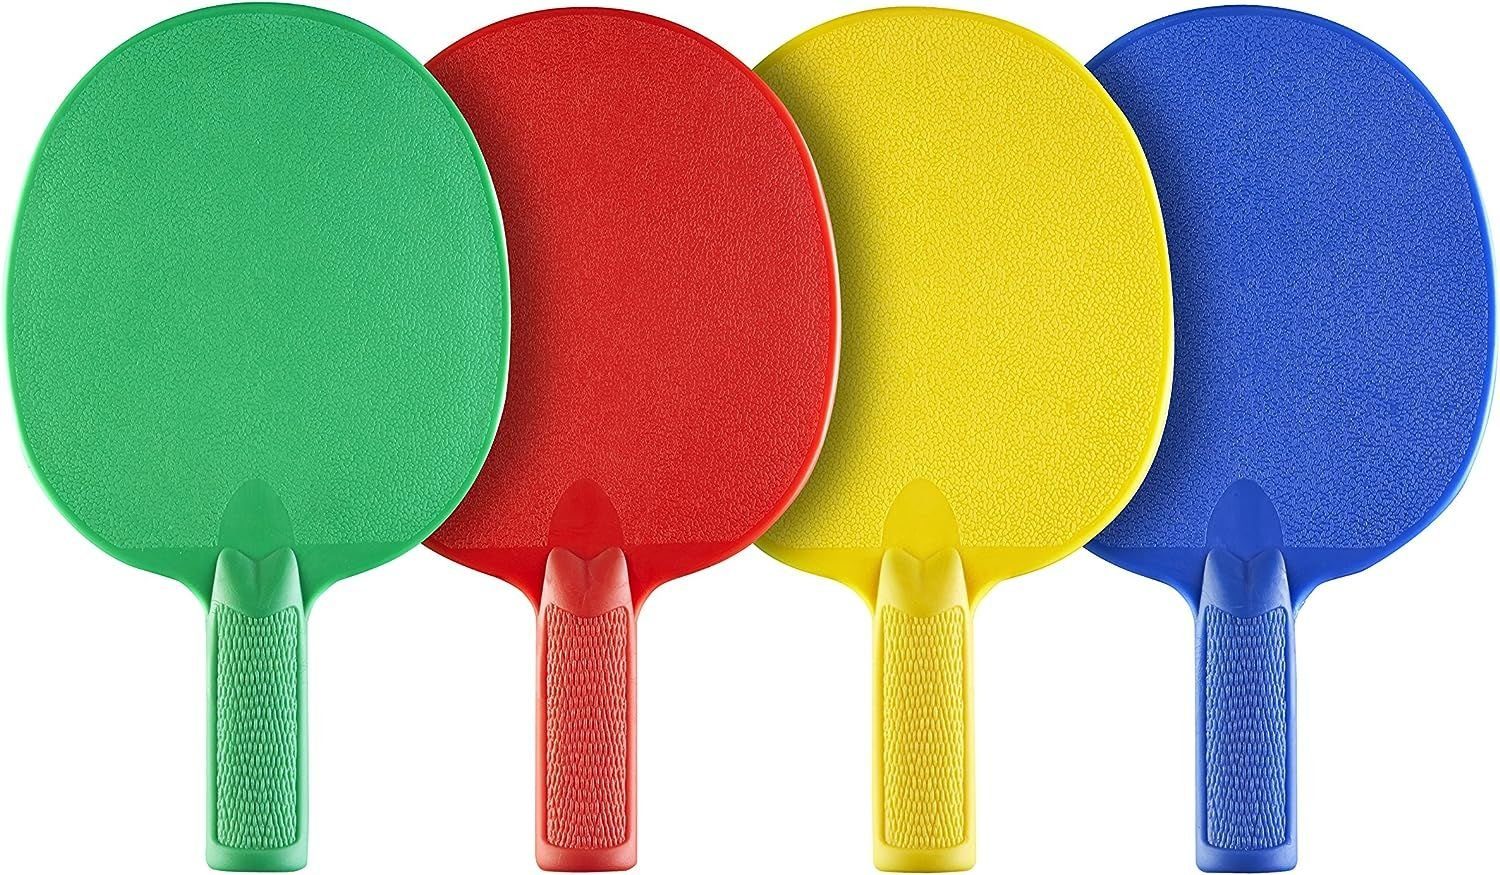 Joola Tischtennisschläger Tischtennis Set Outdoor Multicolor, Tischtennis Schläger Set Tischtennisset Table Tennis Bat Racket